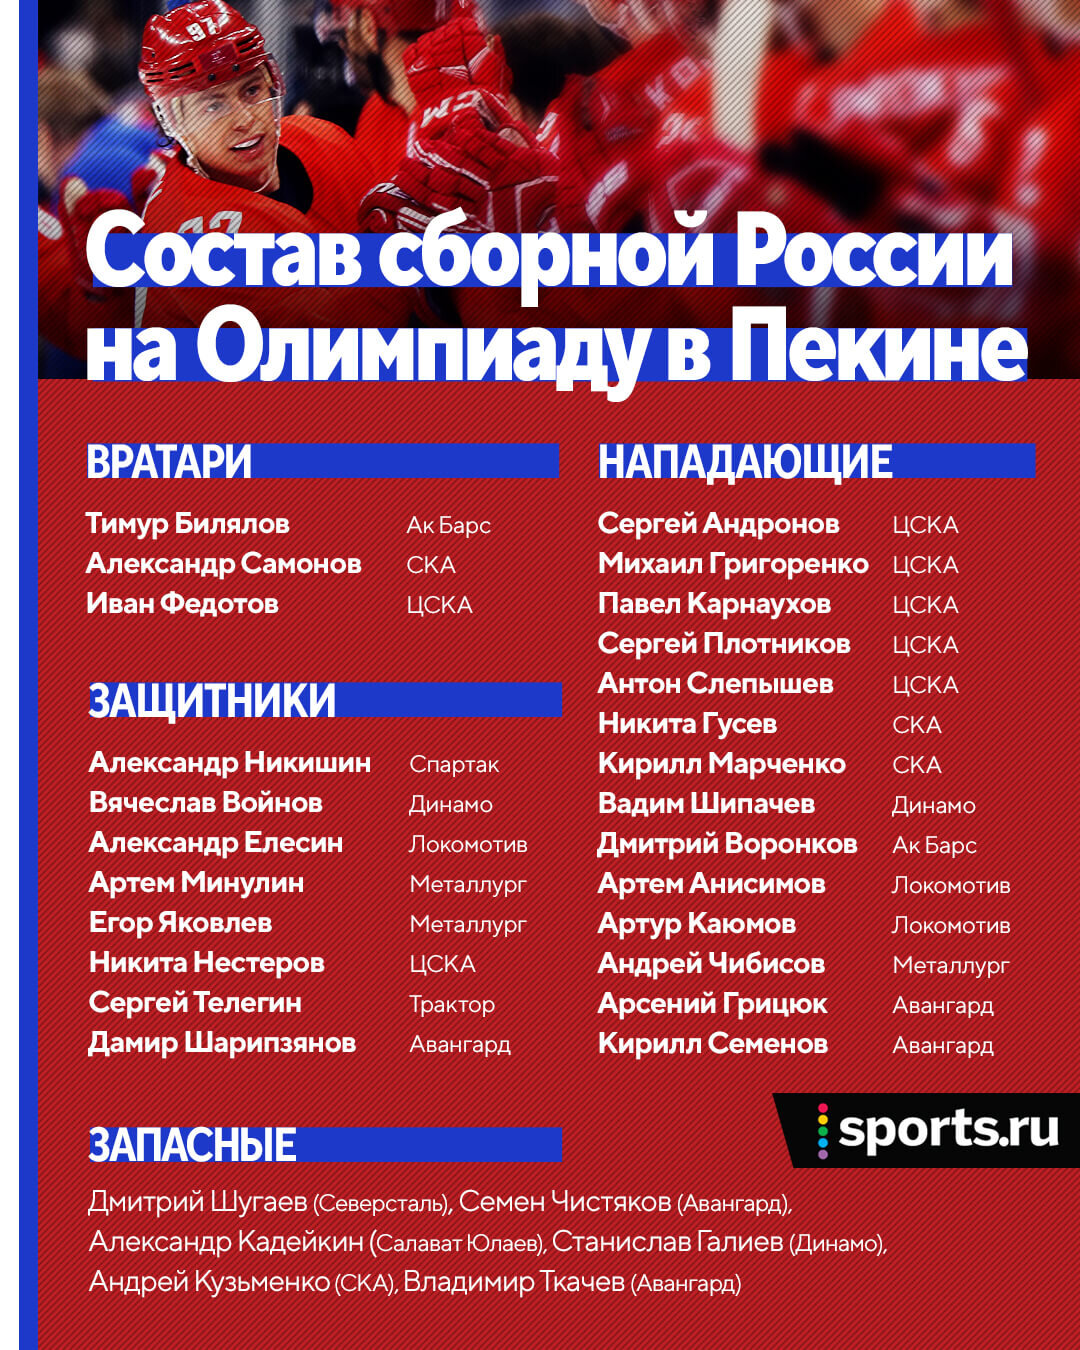 Хоккей: расширенный состав сборной России на Олимпиаду 2022 в Пекине, кто из ведущих игроков в него не вошел, обзор и разбор списка.  Спорт-Экспресс